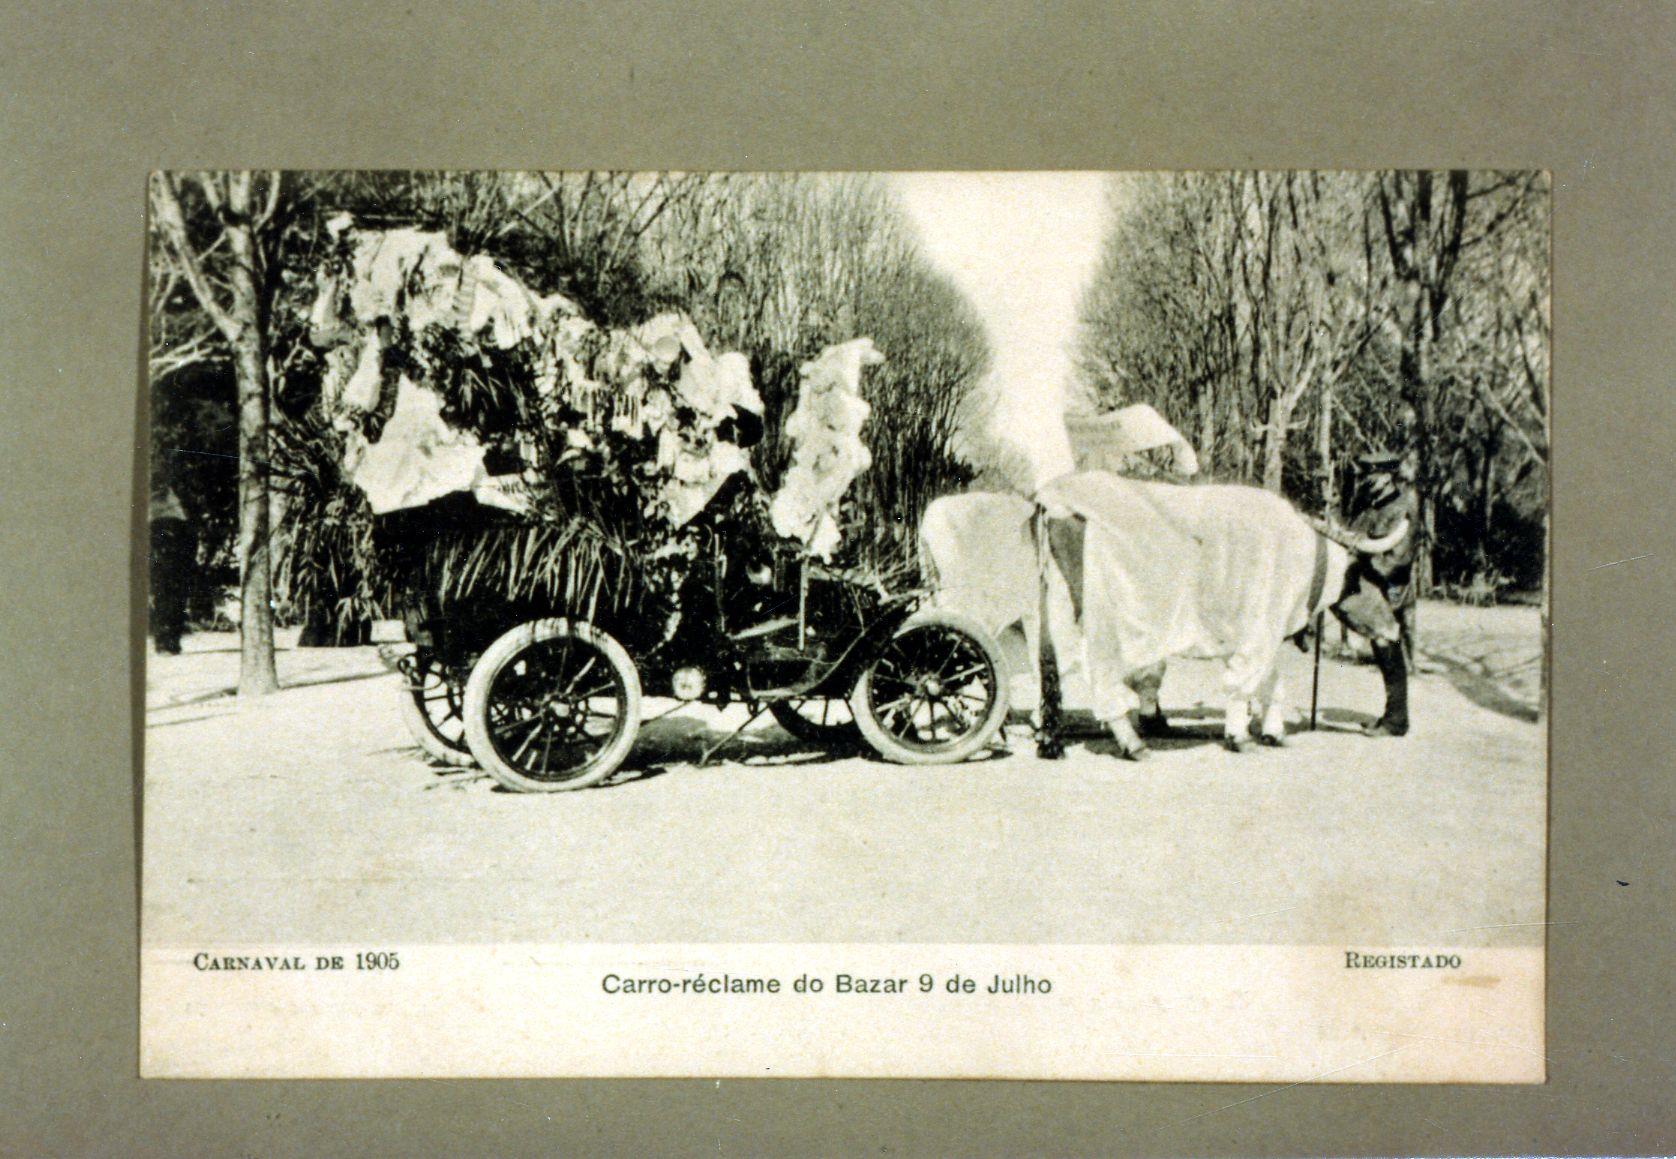 Carnaval de 1905 : carro reclame do Bazar 9 de Julho